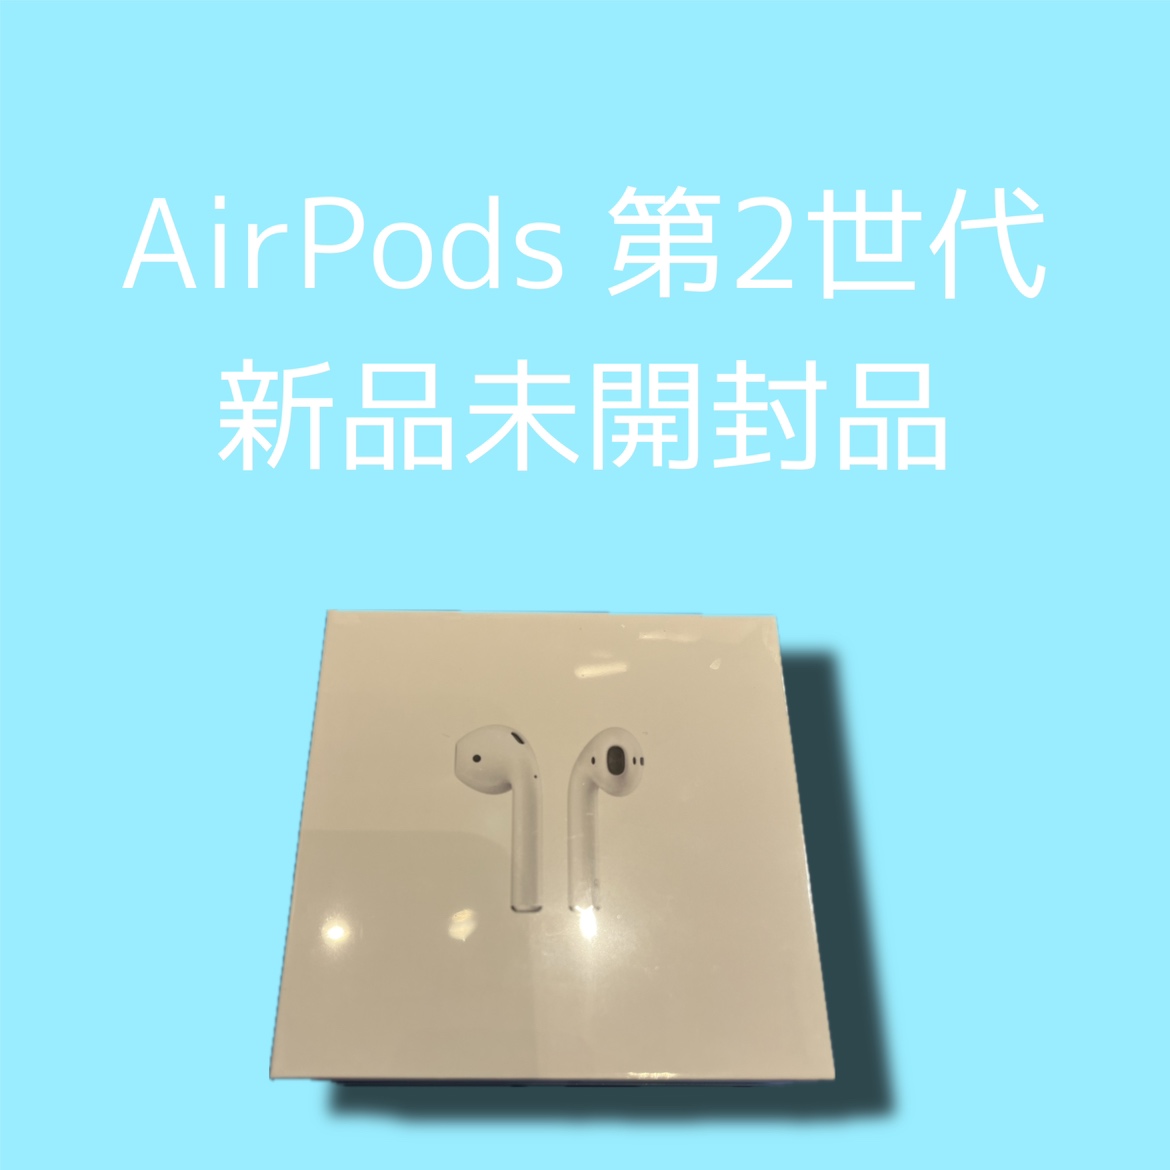 Air Pods(第二世代)・新品未開封品【天神地下街店】